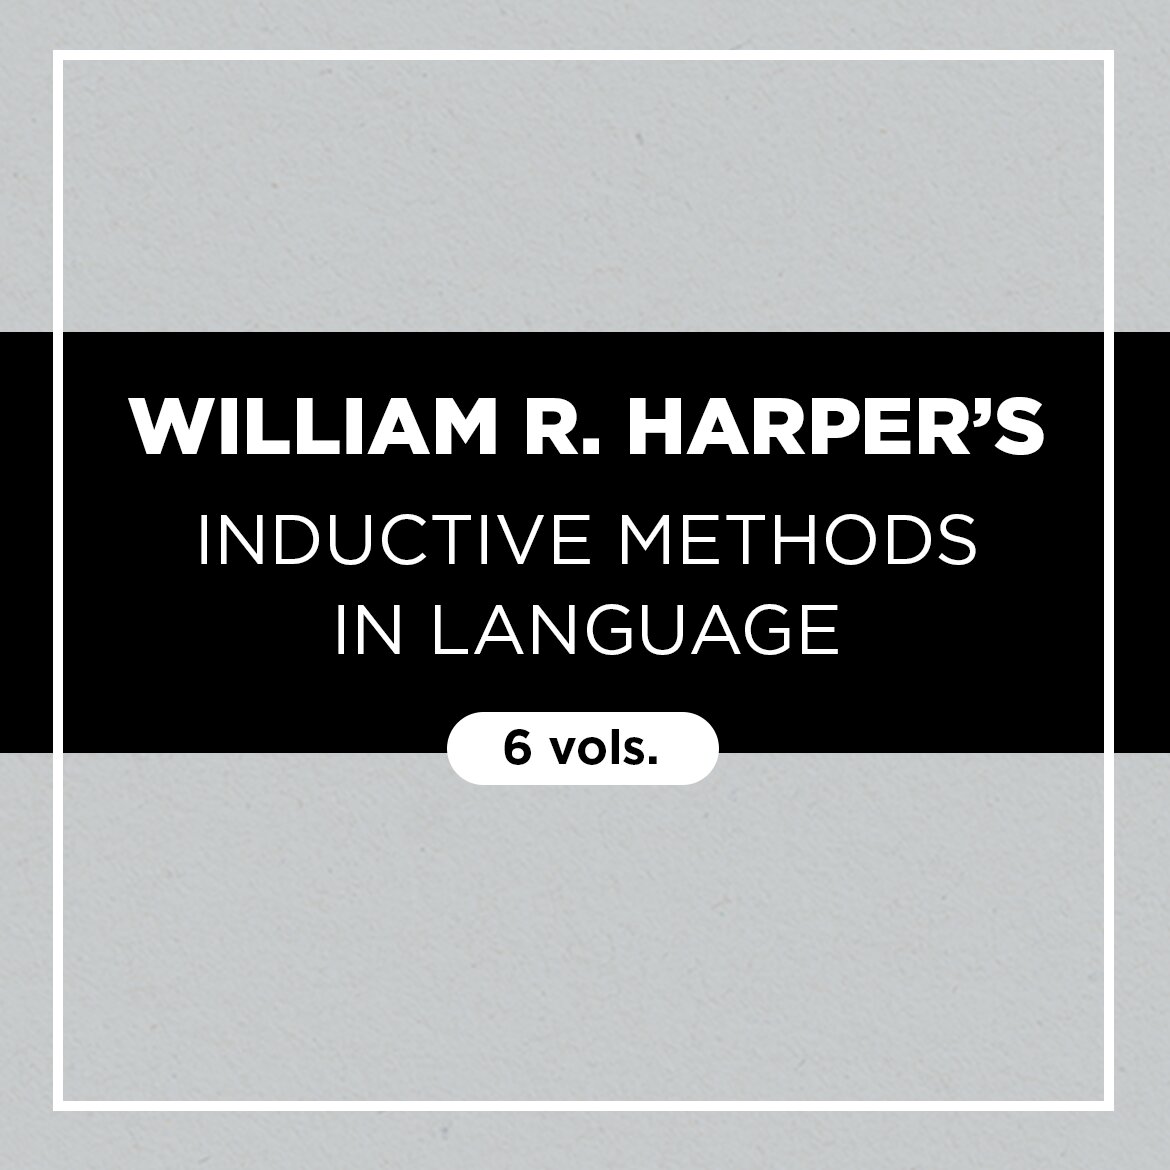 William R. Harper’s Inductive Methods in Language (6 vols.)